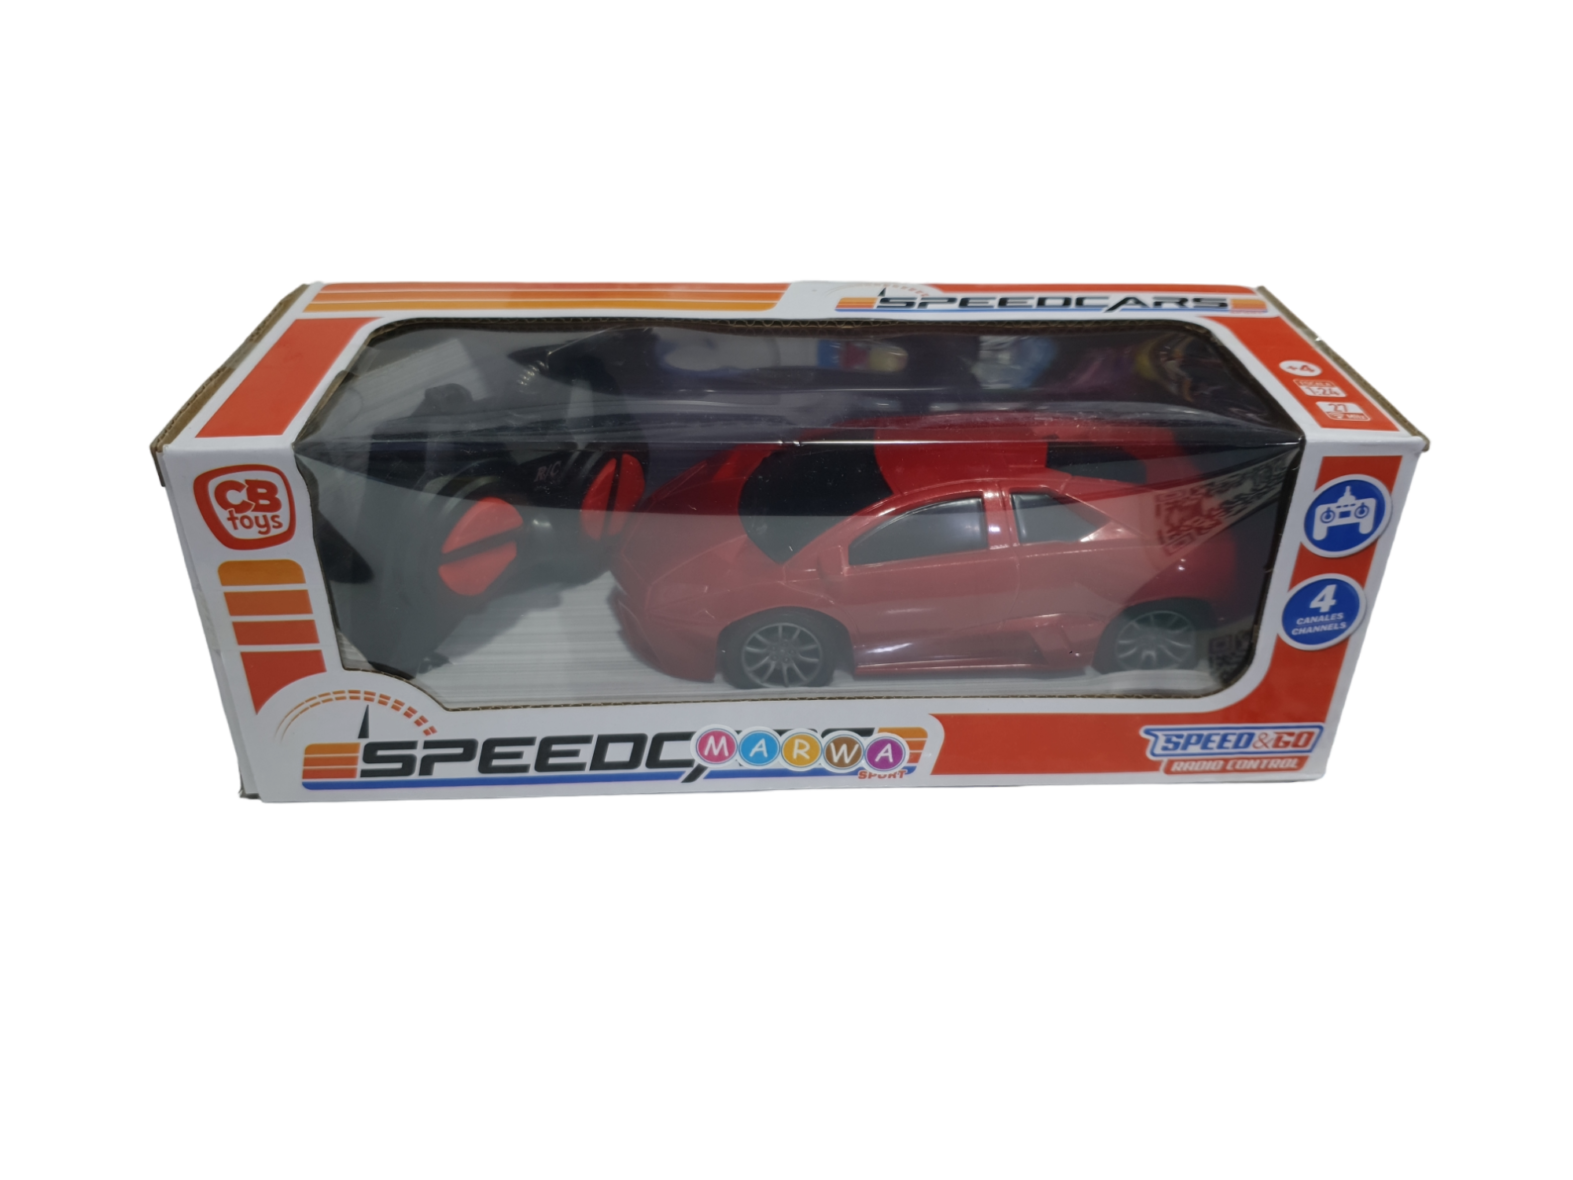 Speed go speedycars